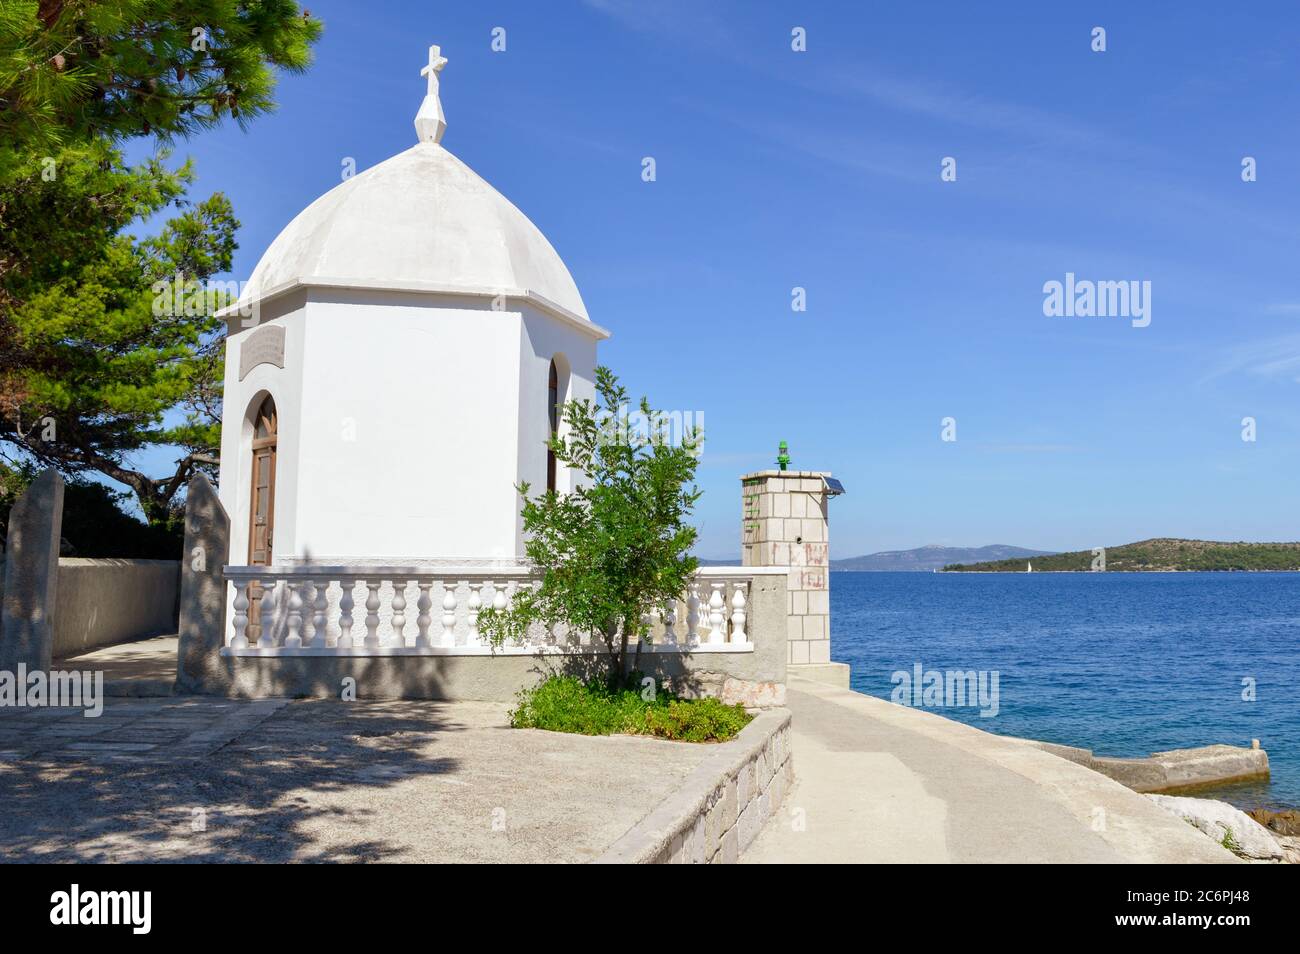 Cappella cattolica bianca nel villaggio sali sull'isola di Dugi otok, costa adriatica, Croazia Foto Stock